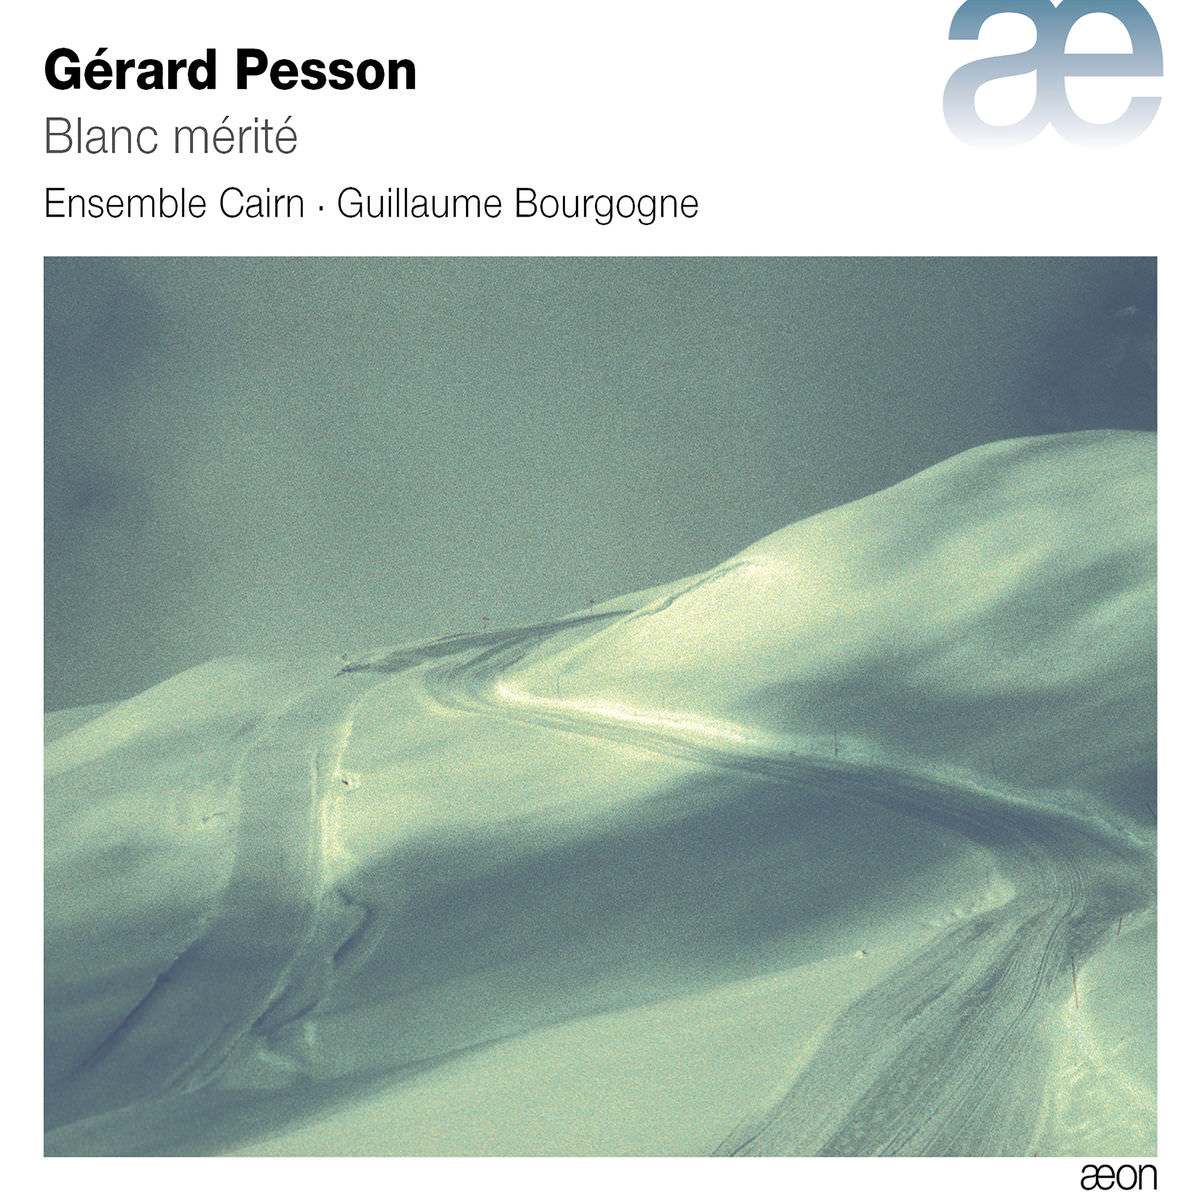 Ensemble Cairn, Guillaume Bourgogne – Pesson: Blanc merite (2018) [FLAC 24bit/48kHz]